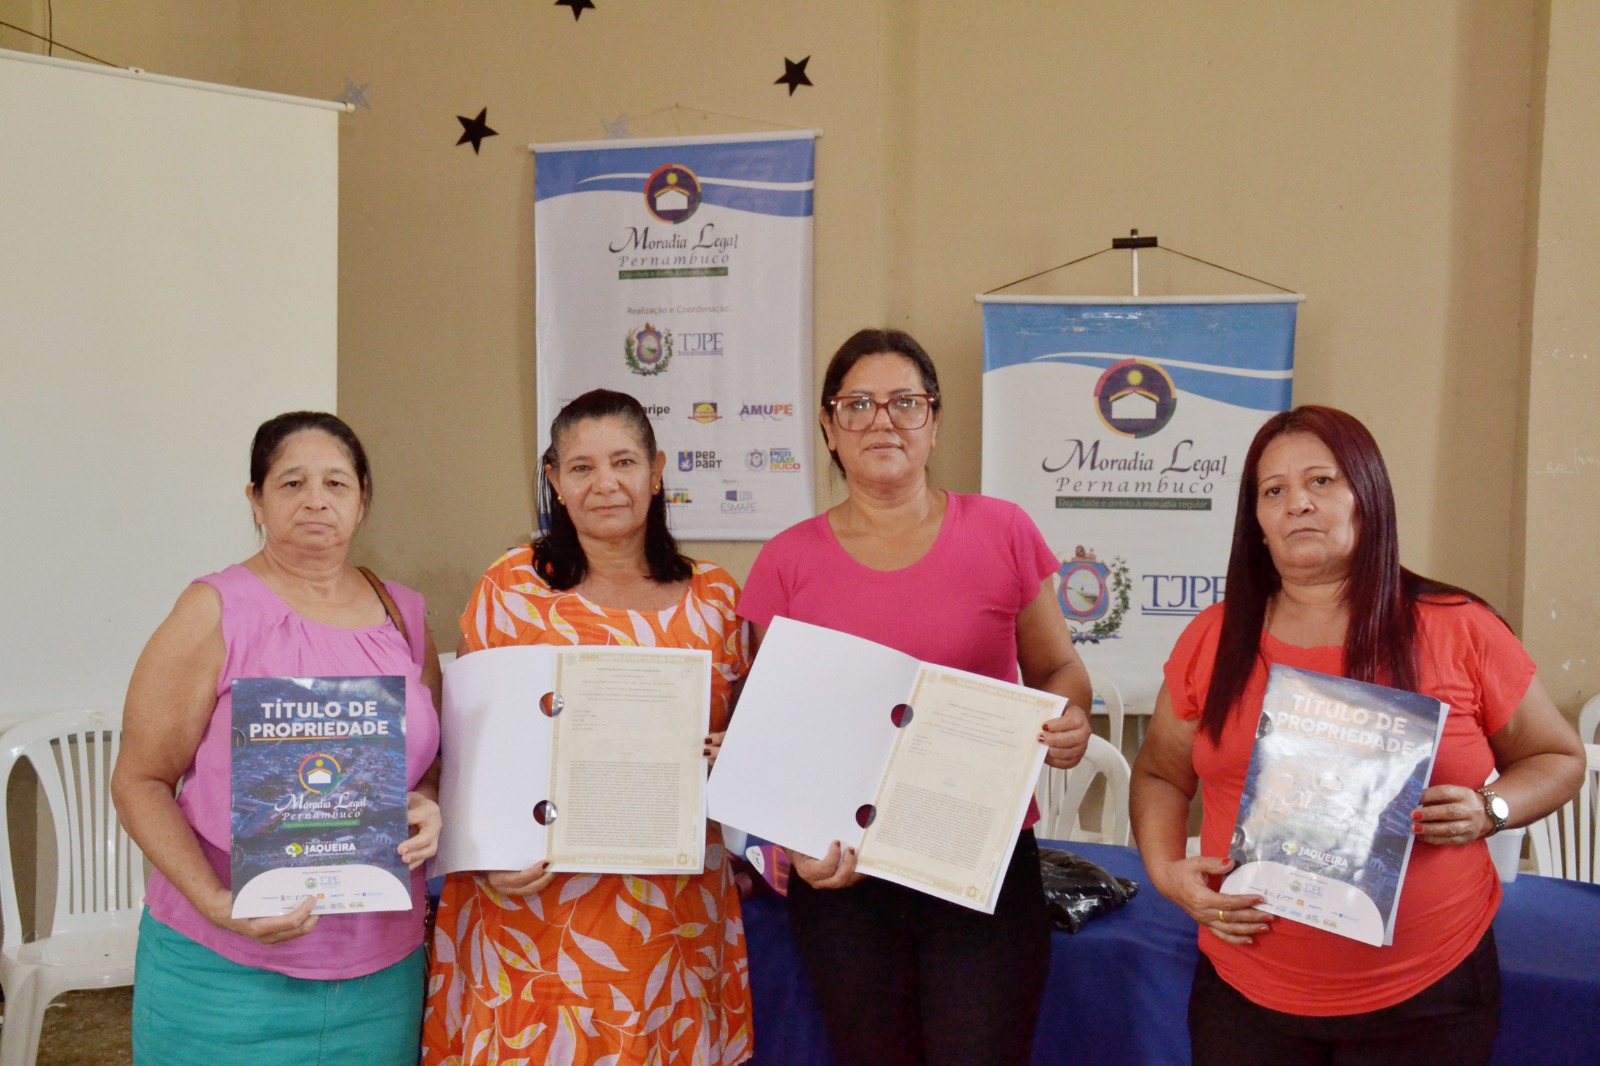  Prefeitura de Jaqueira Entrega Títulos de Propriedade a Mais 200 Famílias pelo Programa Moradia Legal